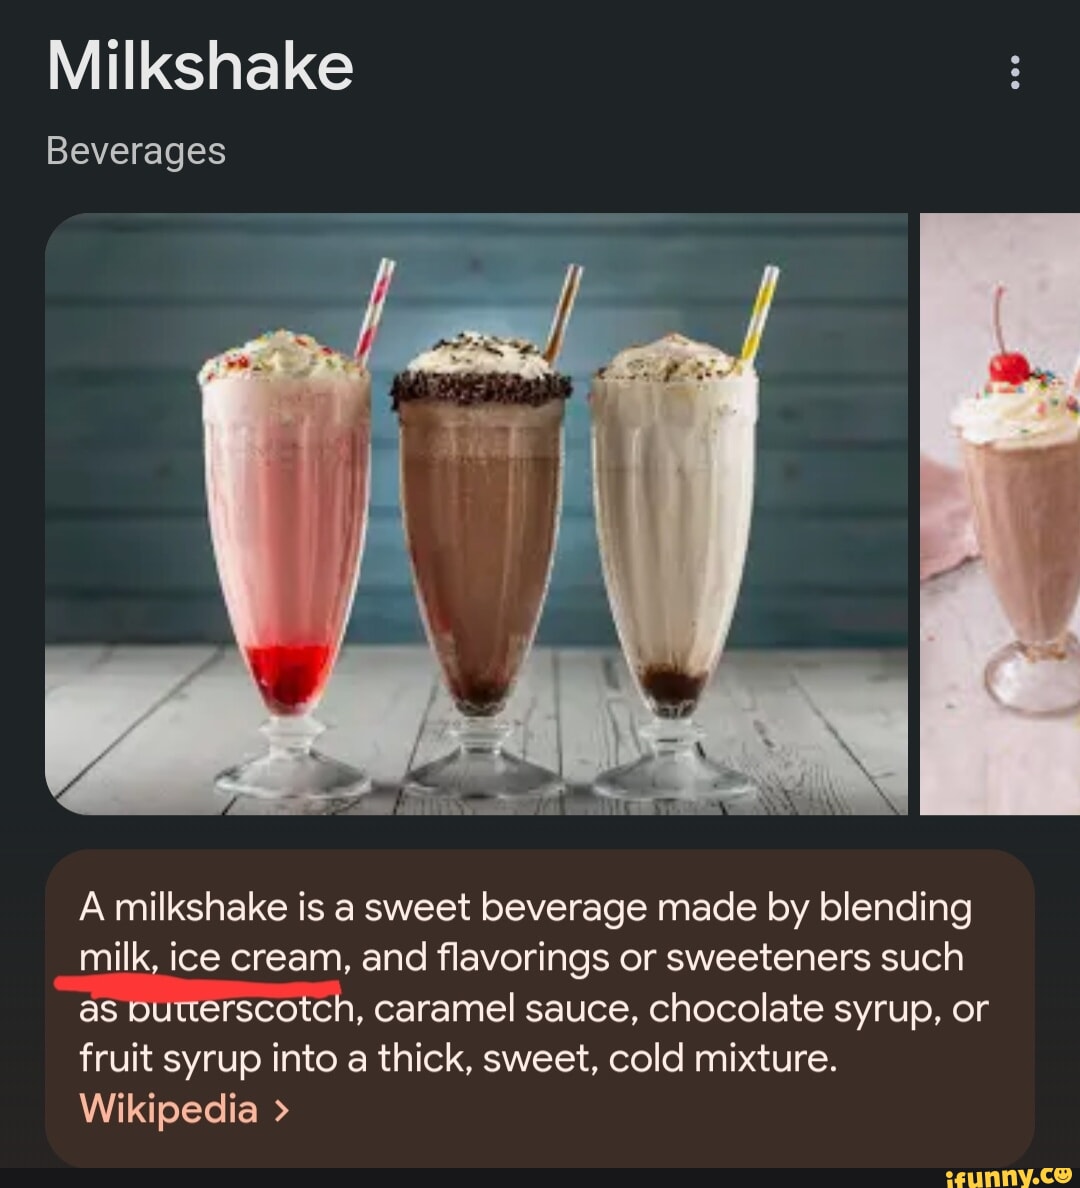 Milkshake - Wikipedia